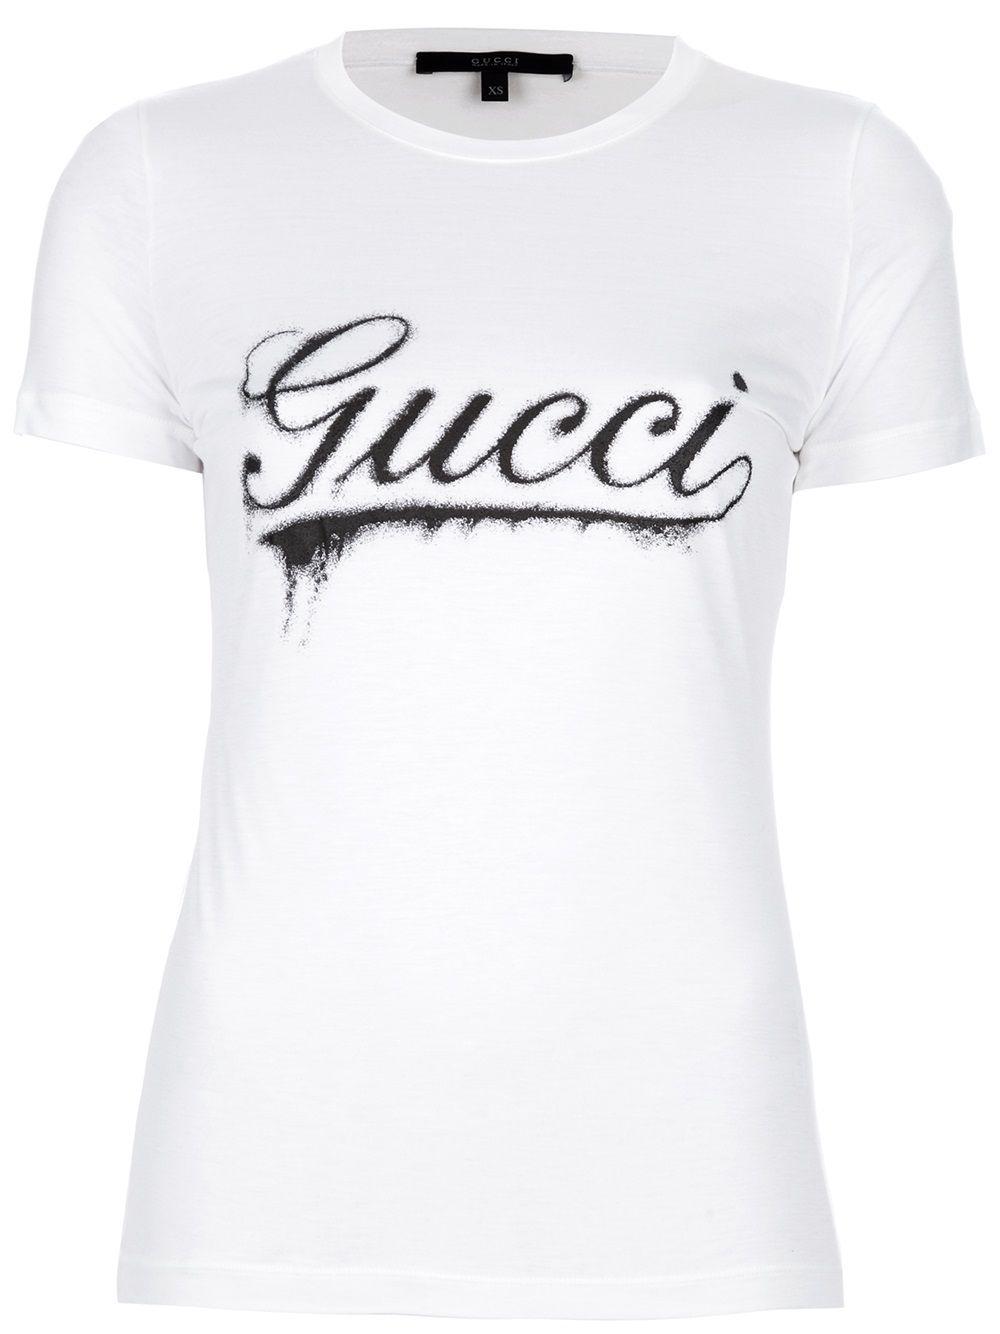 Gucci Clothing Logo - Gucci Logo Print Tshirt in Black - Lyst